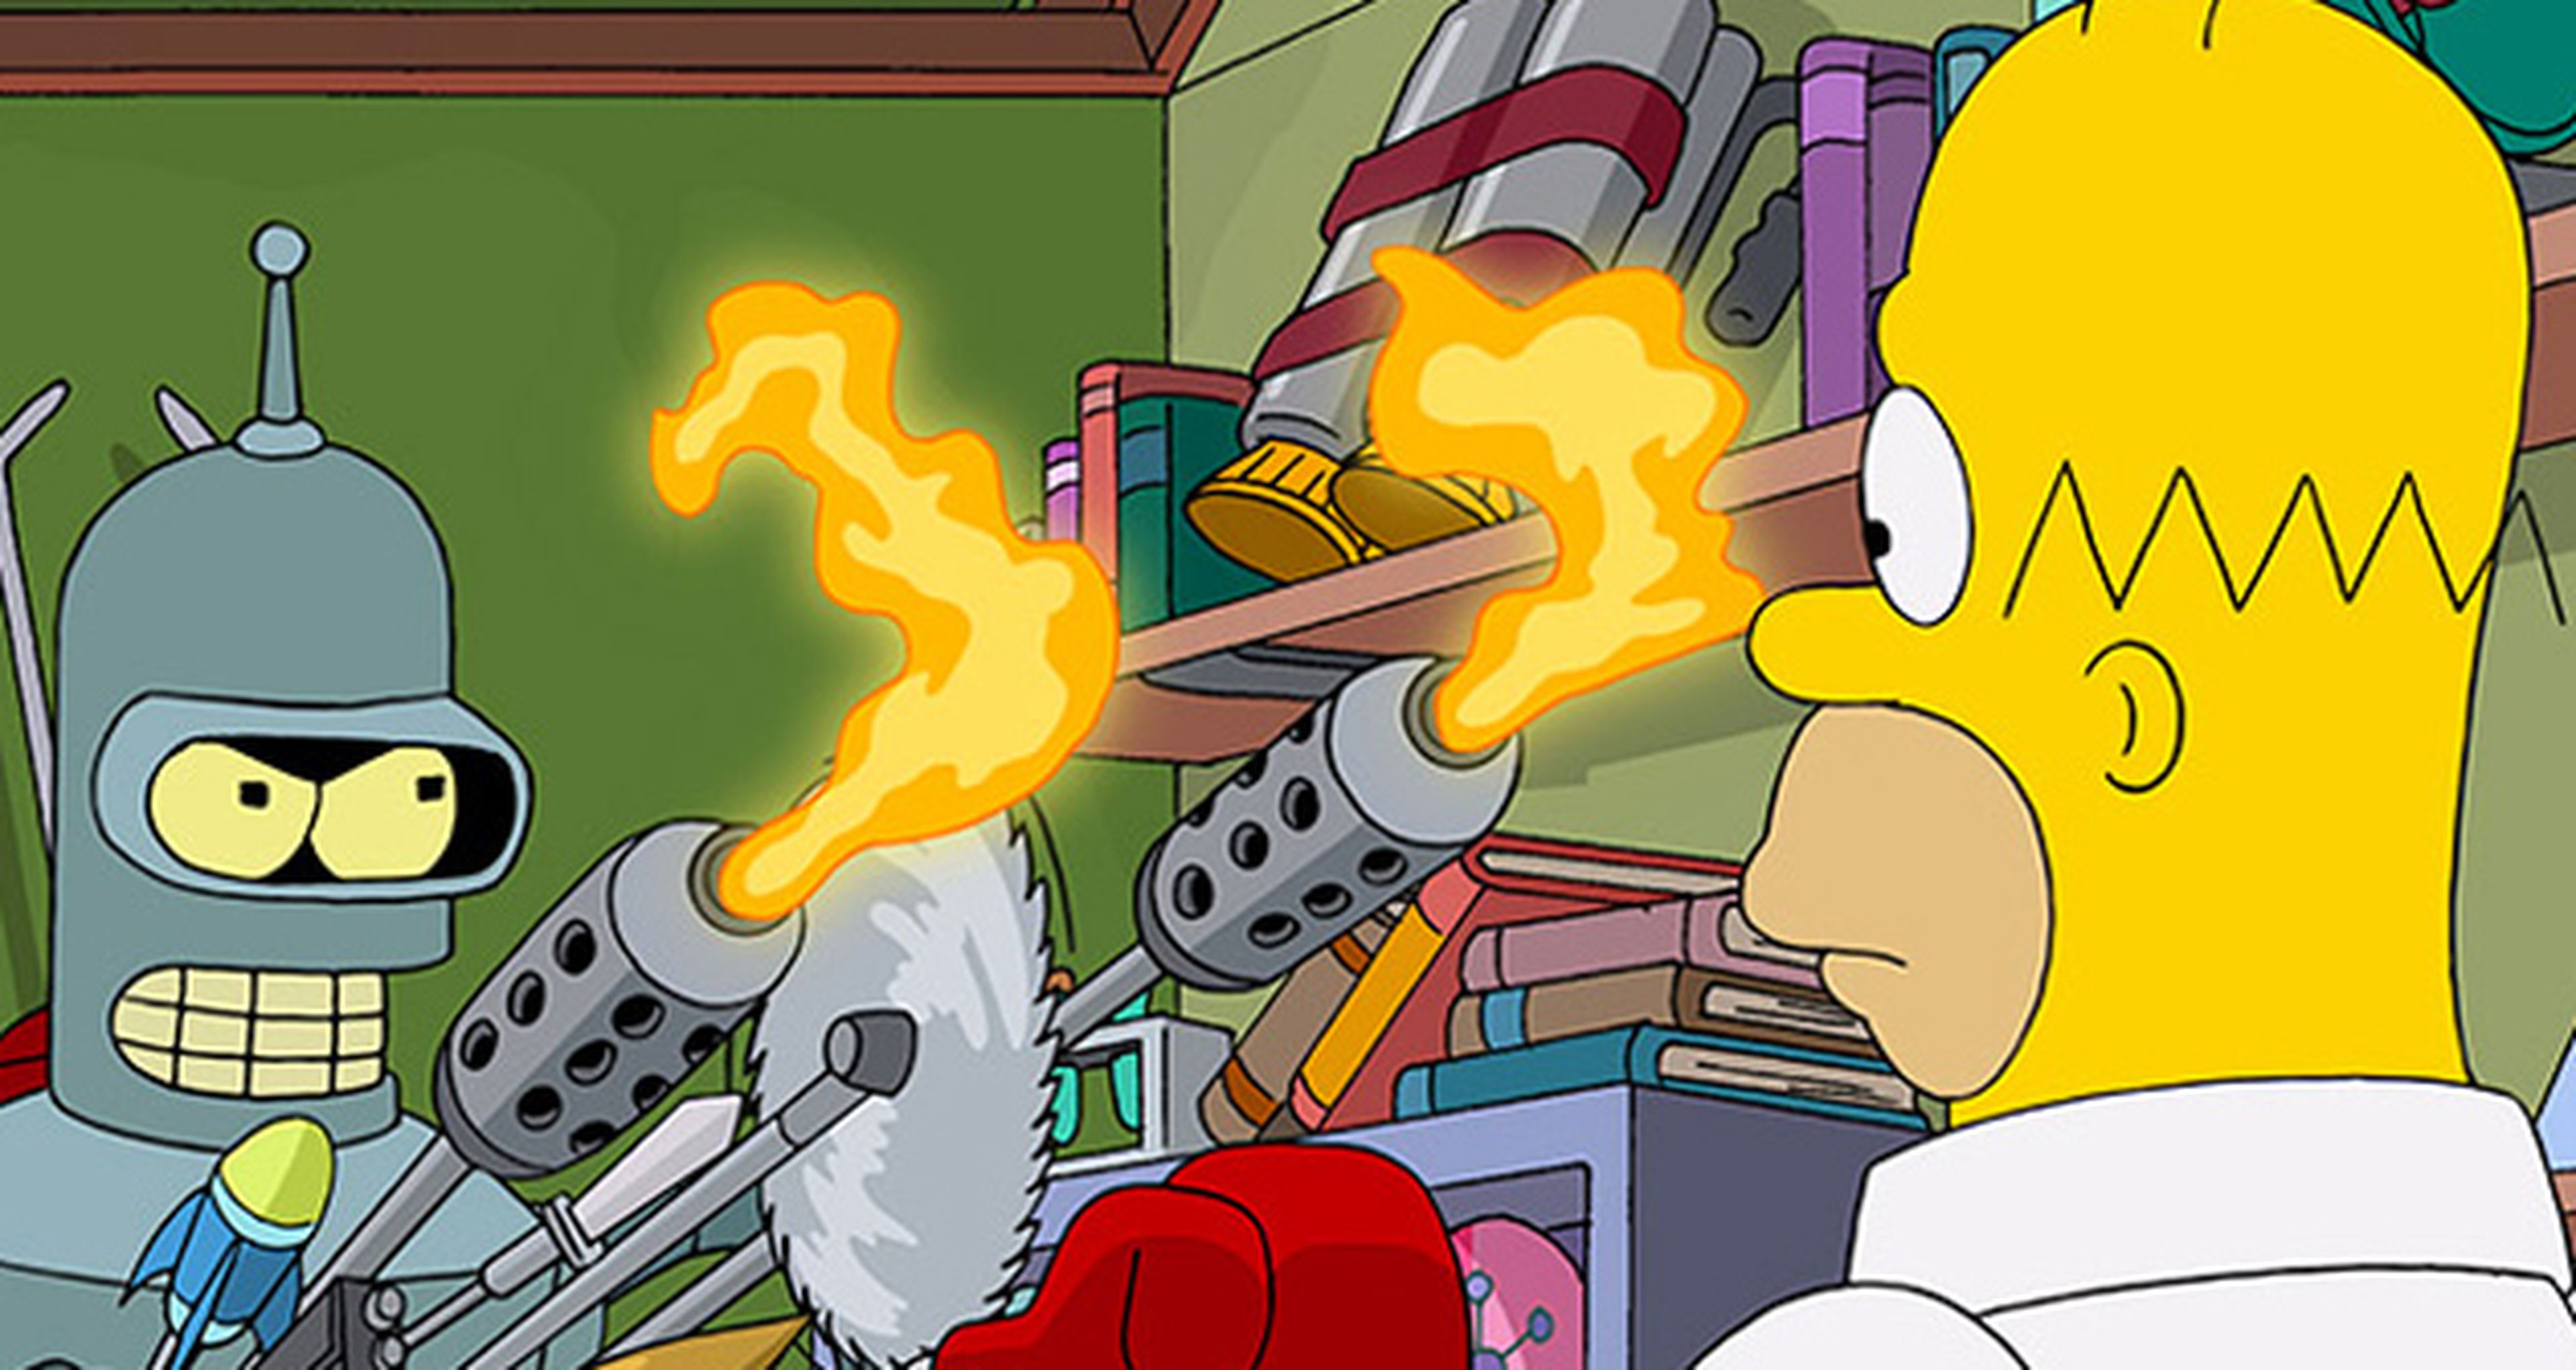 Primera imagen del crossover de Los Simpson y Futurama